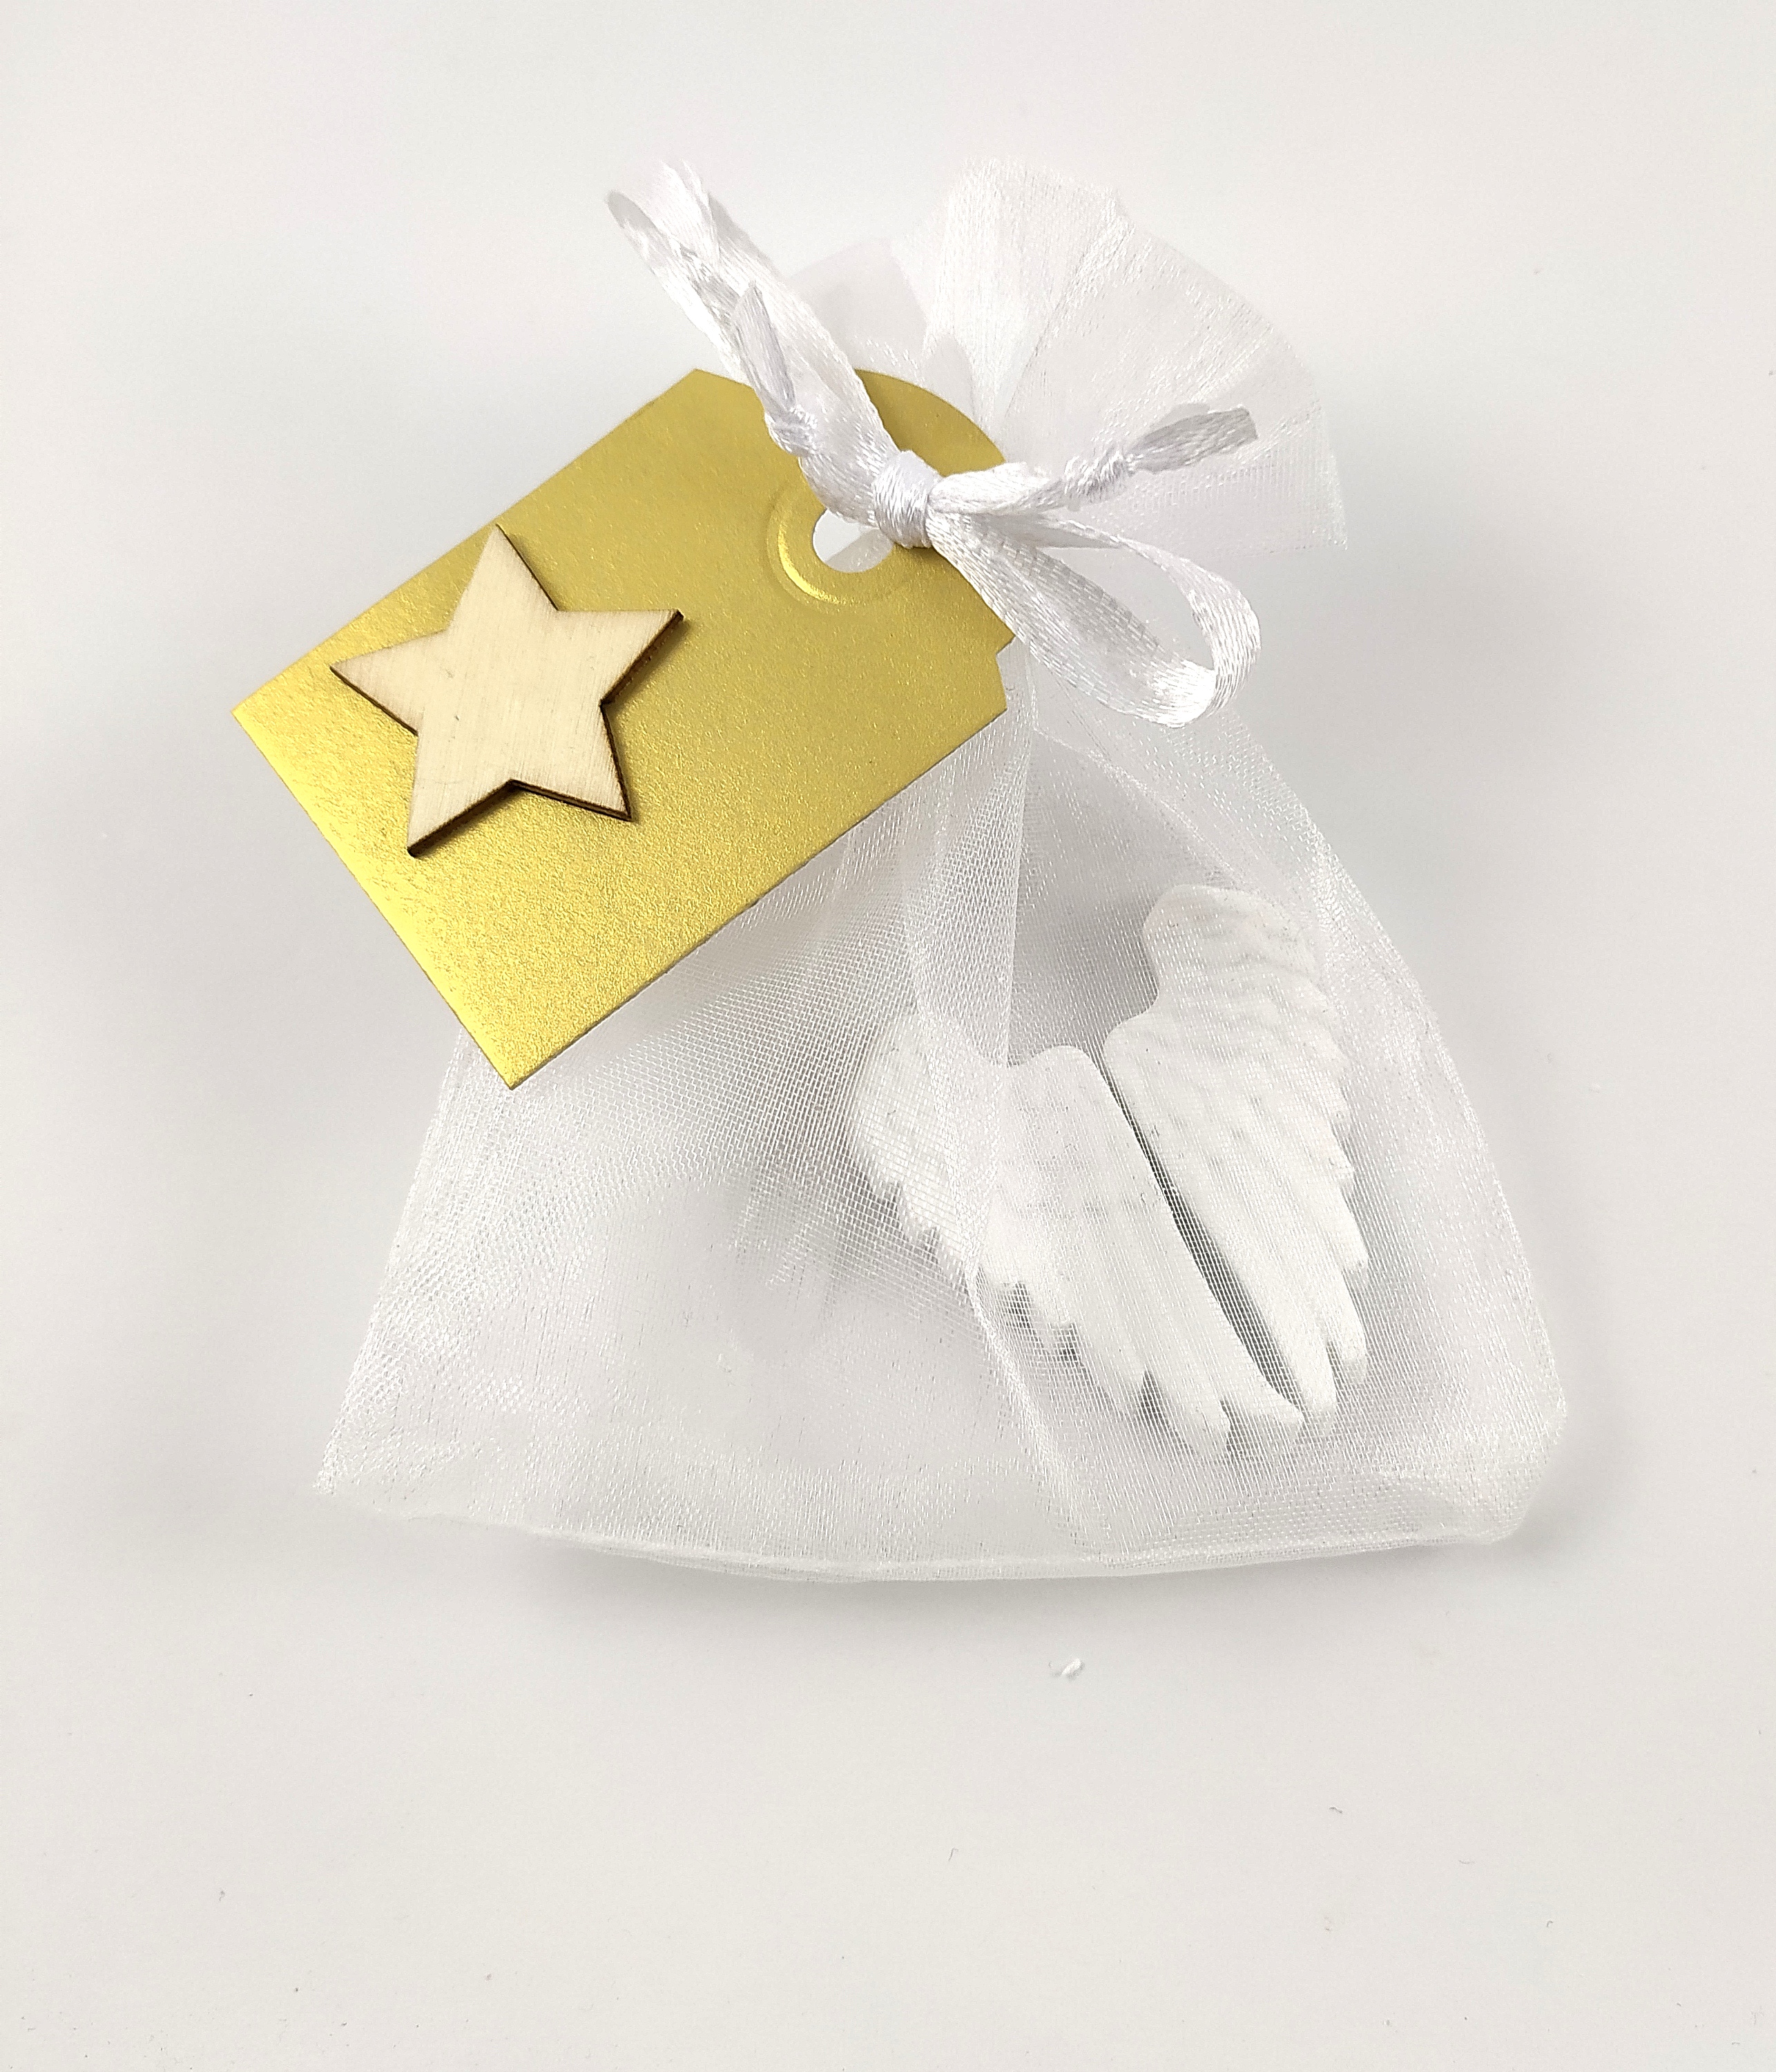 Mýdlo -  andělská křídla střední- ručně vyráběné mýdlo, dárkové balení